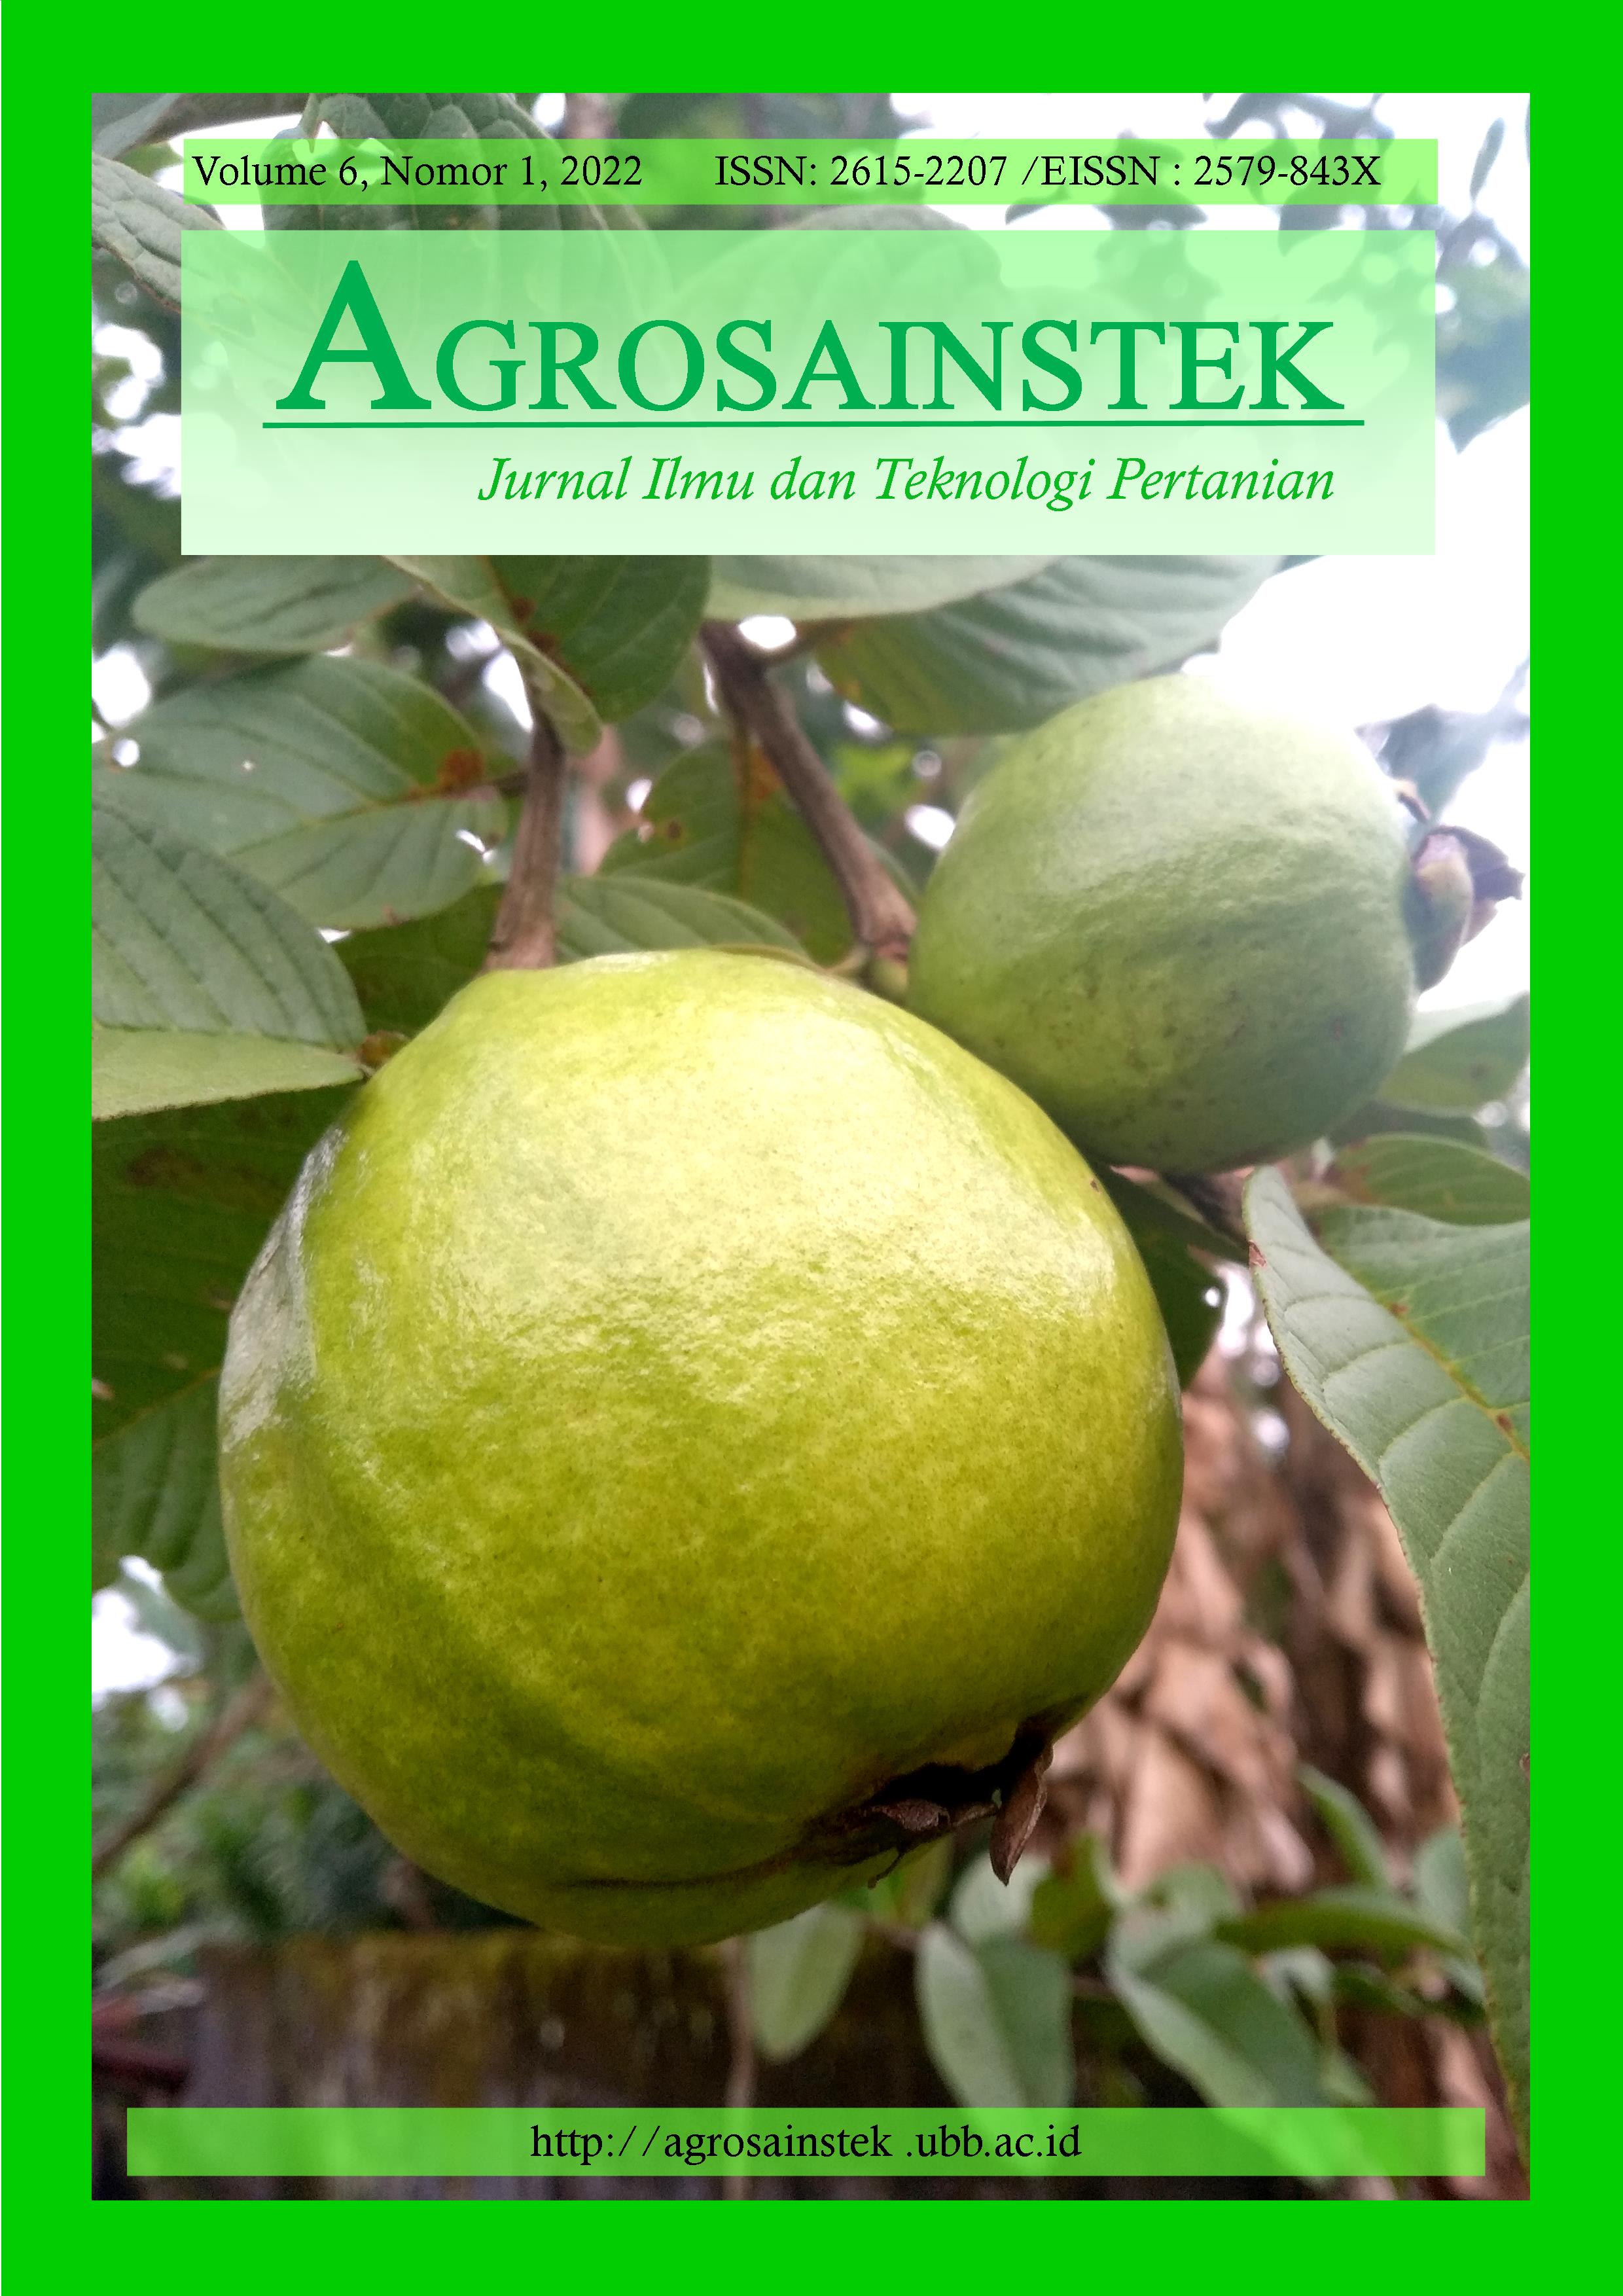 					View Vol. 6 No. 1 (2022): AGROSAINSTEK: Jurnal Ilmu dan Teknologi Pertanian
				